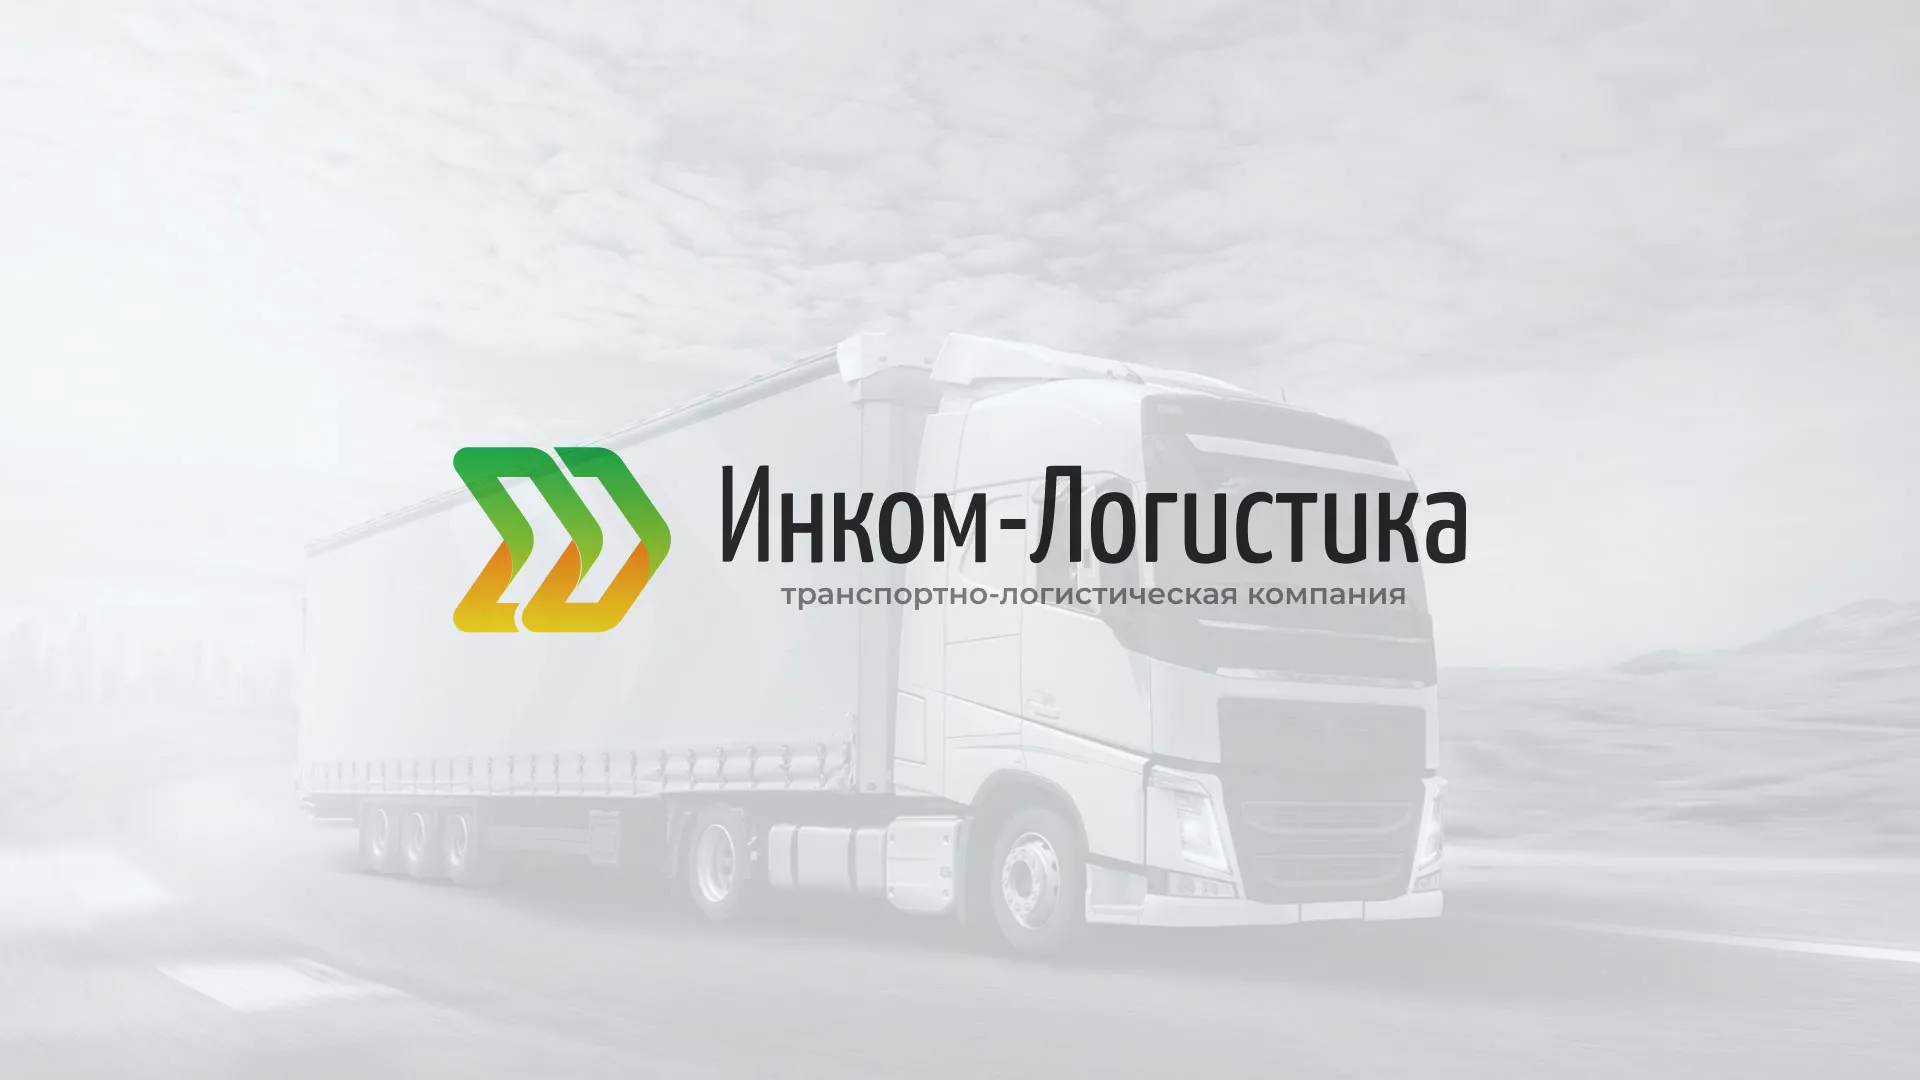 Разработка логотипа и сайта компании «Инком-Логистика» в Железнодорожном